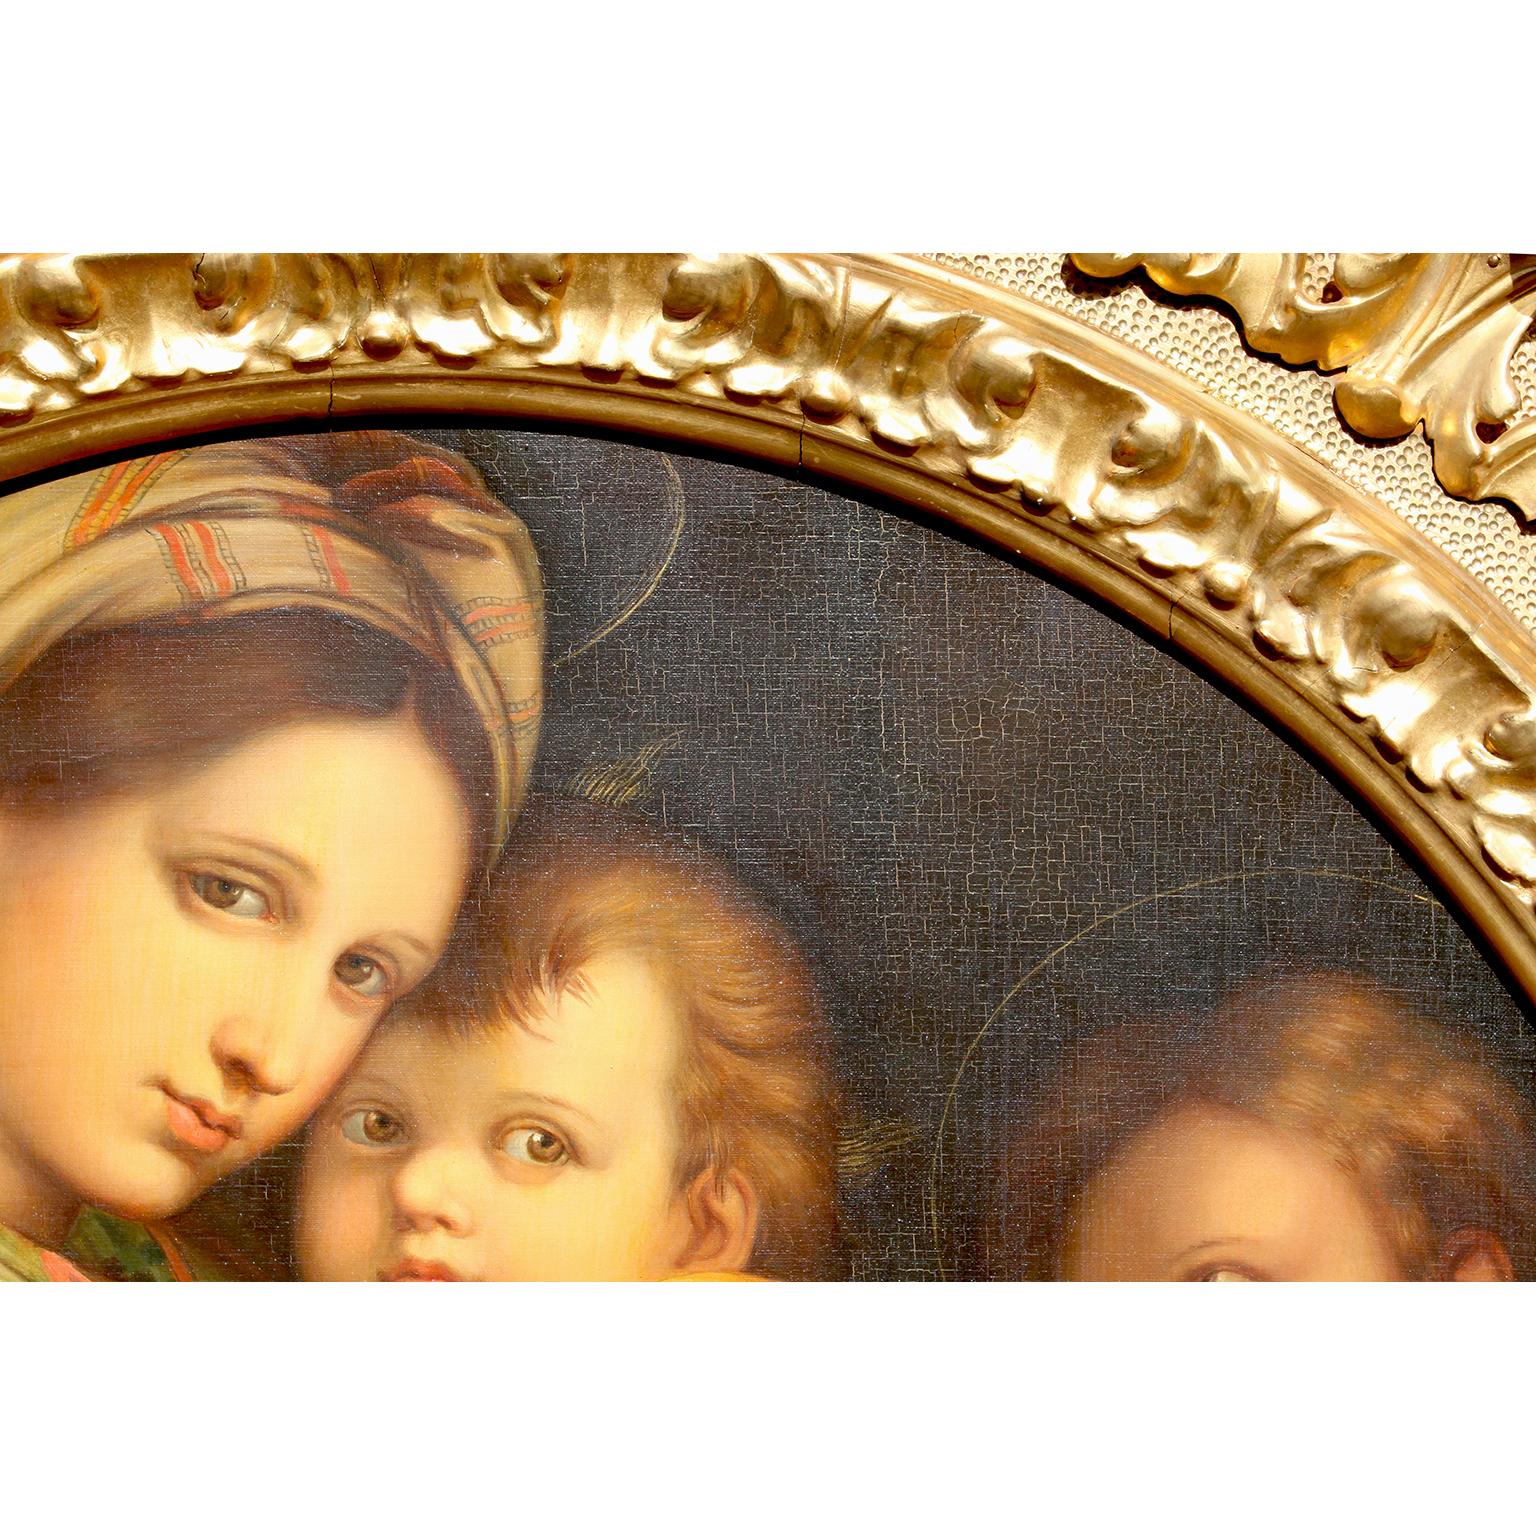 Early 20th Century After Raffaello Sanzio 1483-1520 Raphael La Madonna della Seggiola Oil on Canvas For Sale